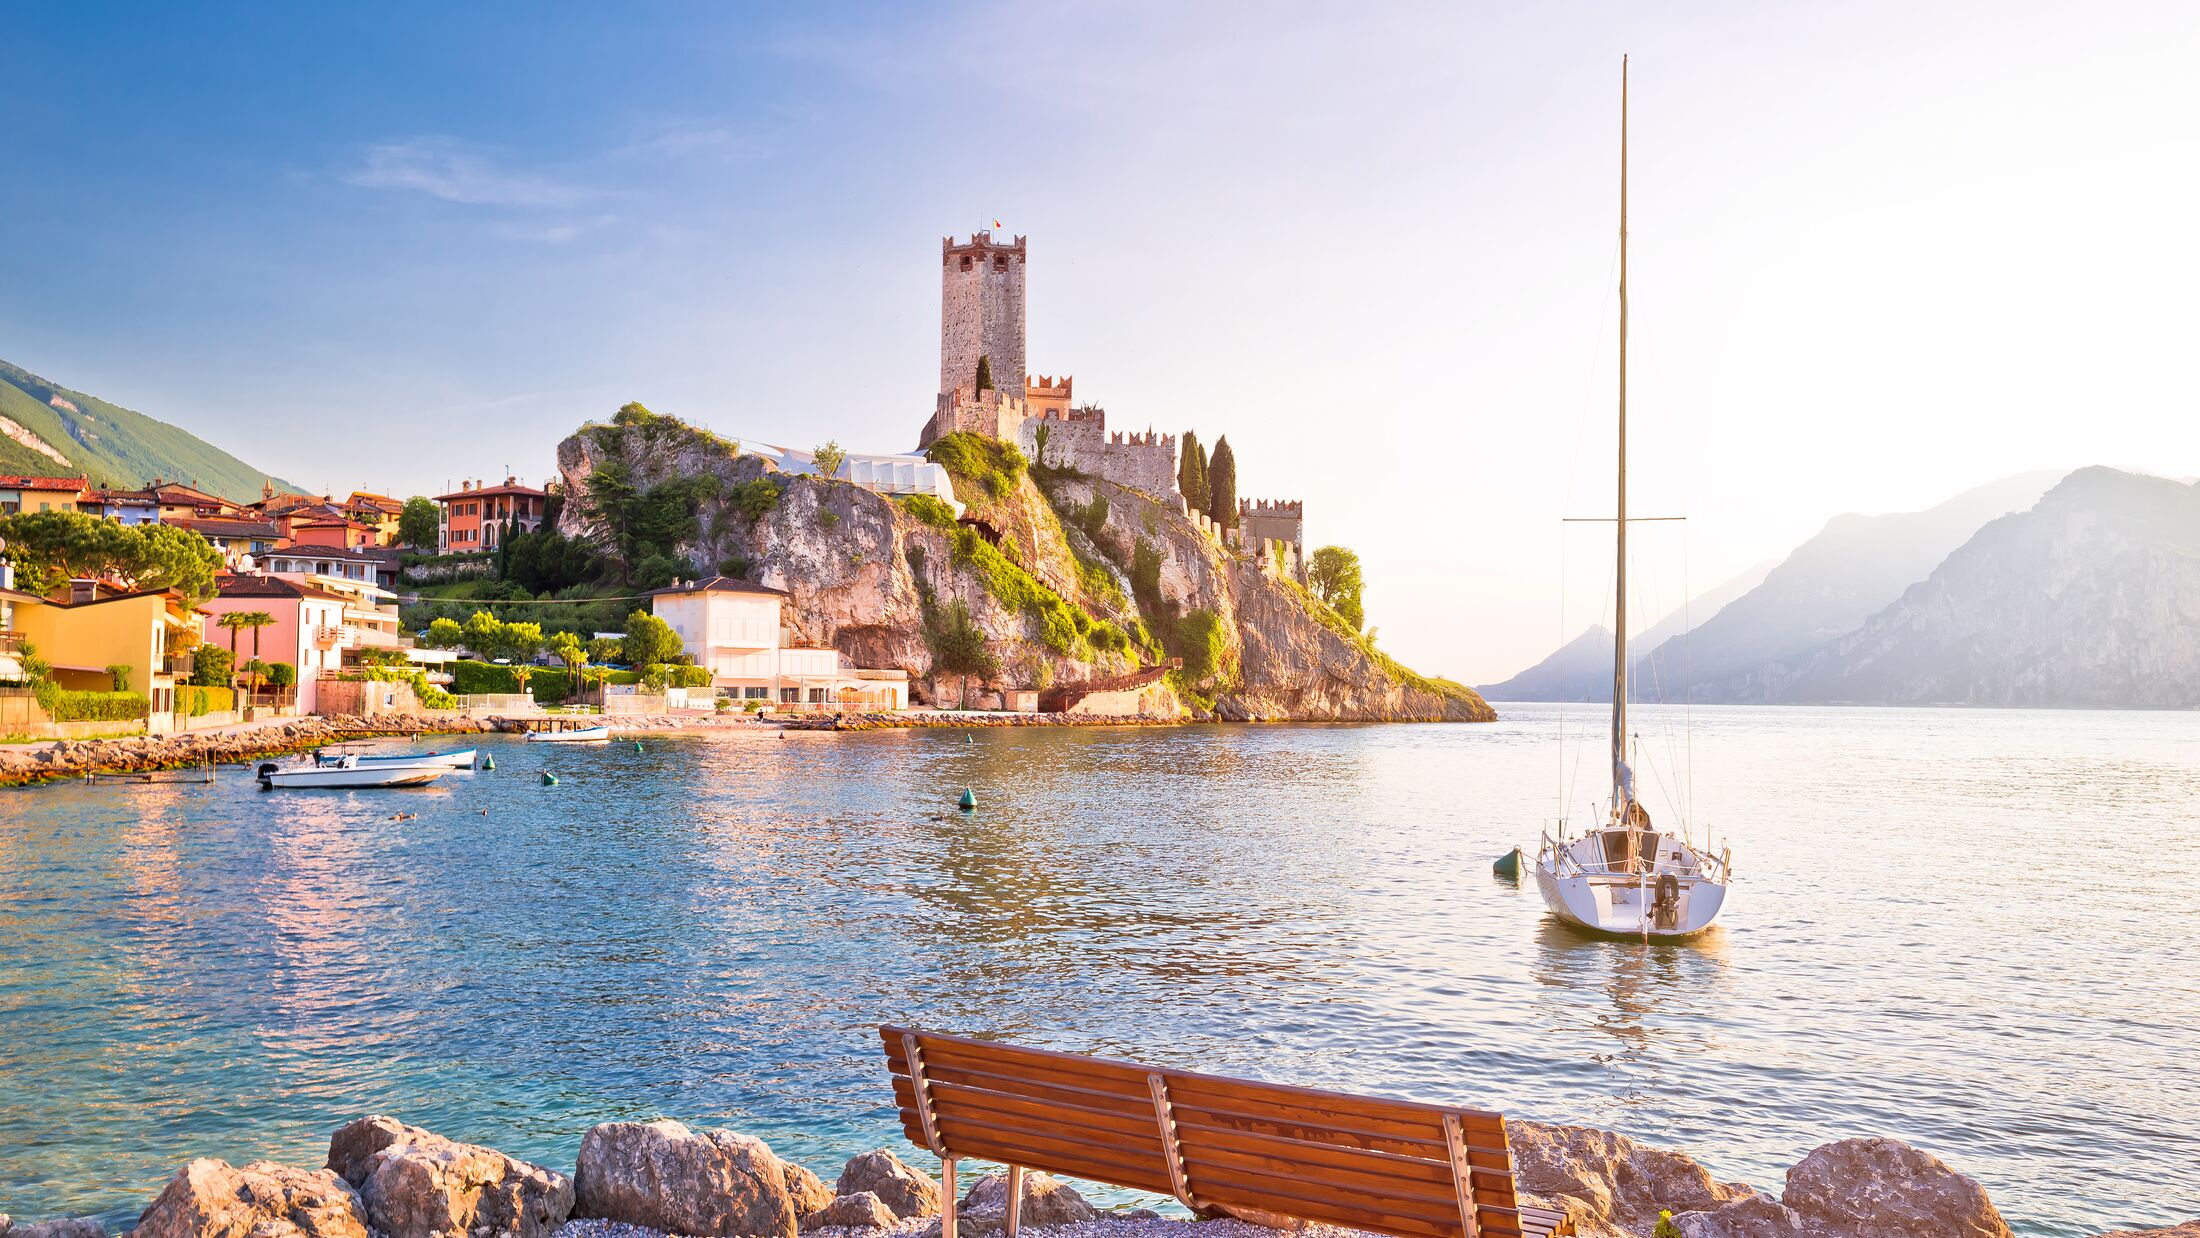 Town of Malcesine castle and beach view, Veneto region of Italy, Lago di Garda